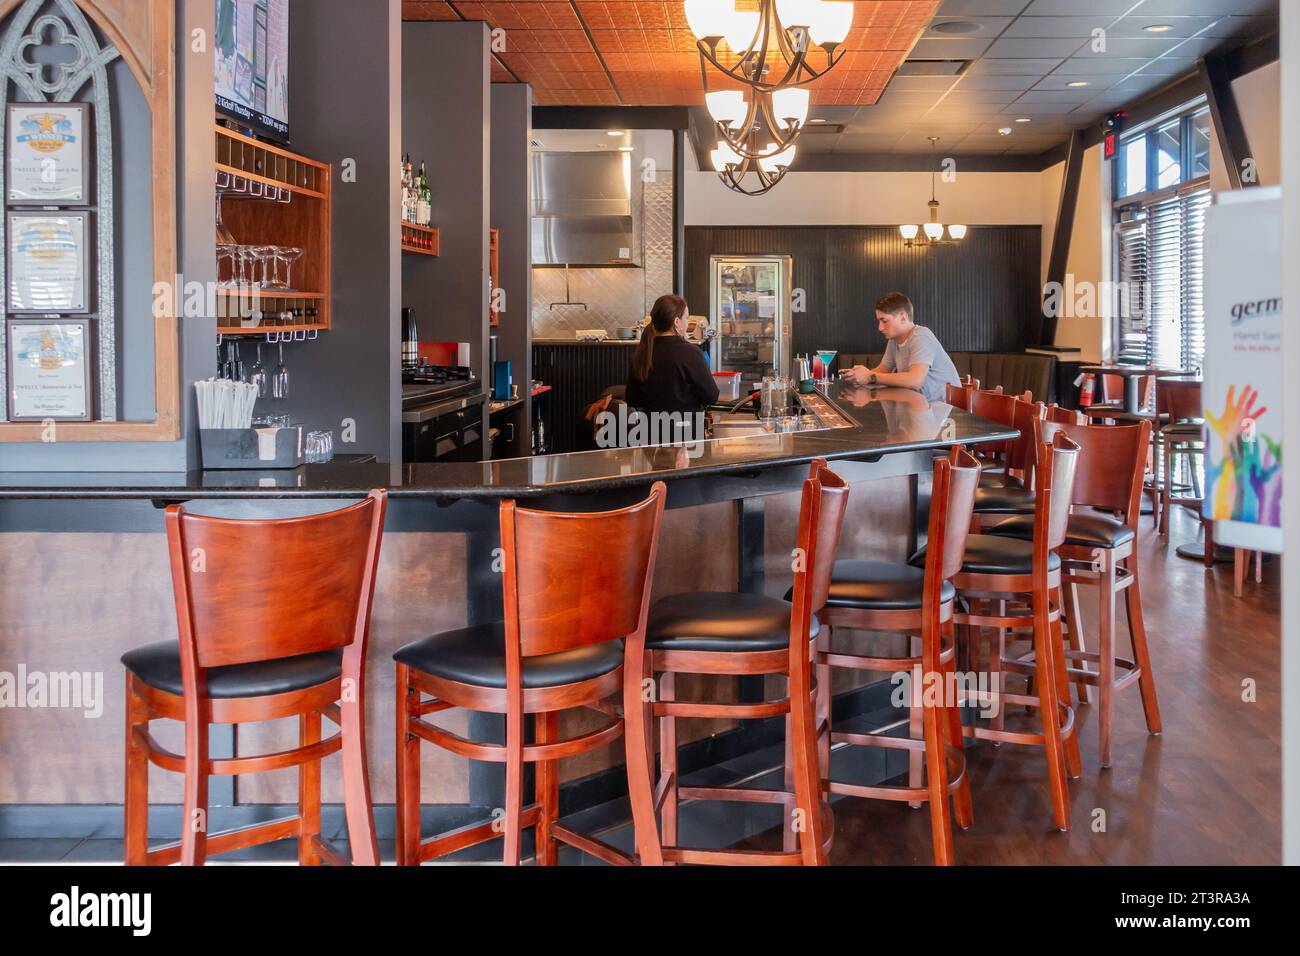 Dodici ristoranti e bar, area bar interna con un cliente maschio con la sua bevanda adulta e cameriera donna. Wichita, Kansas, USA. Foto Stock